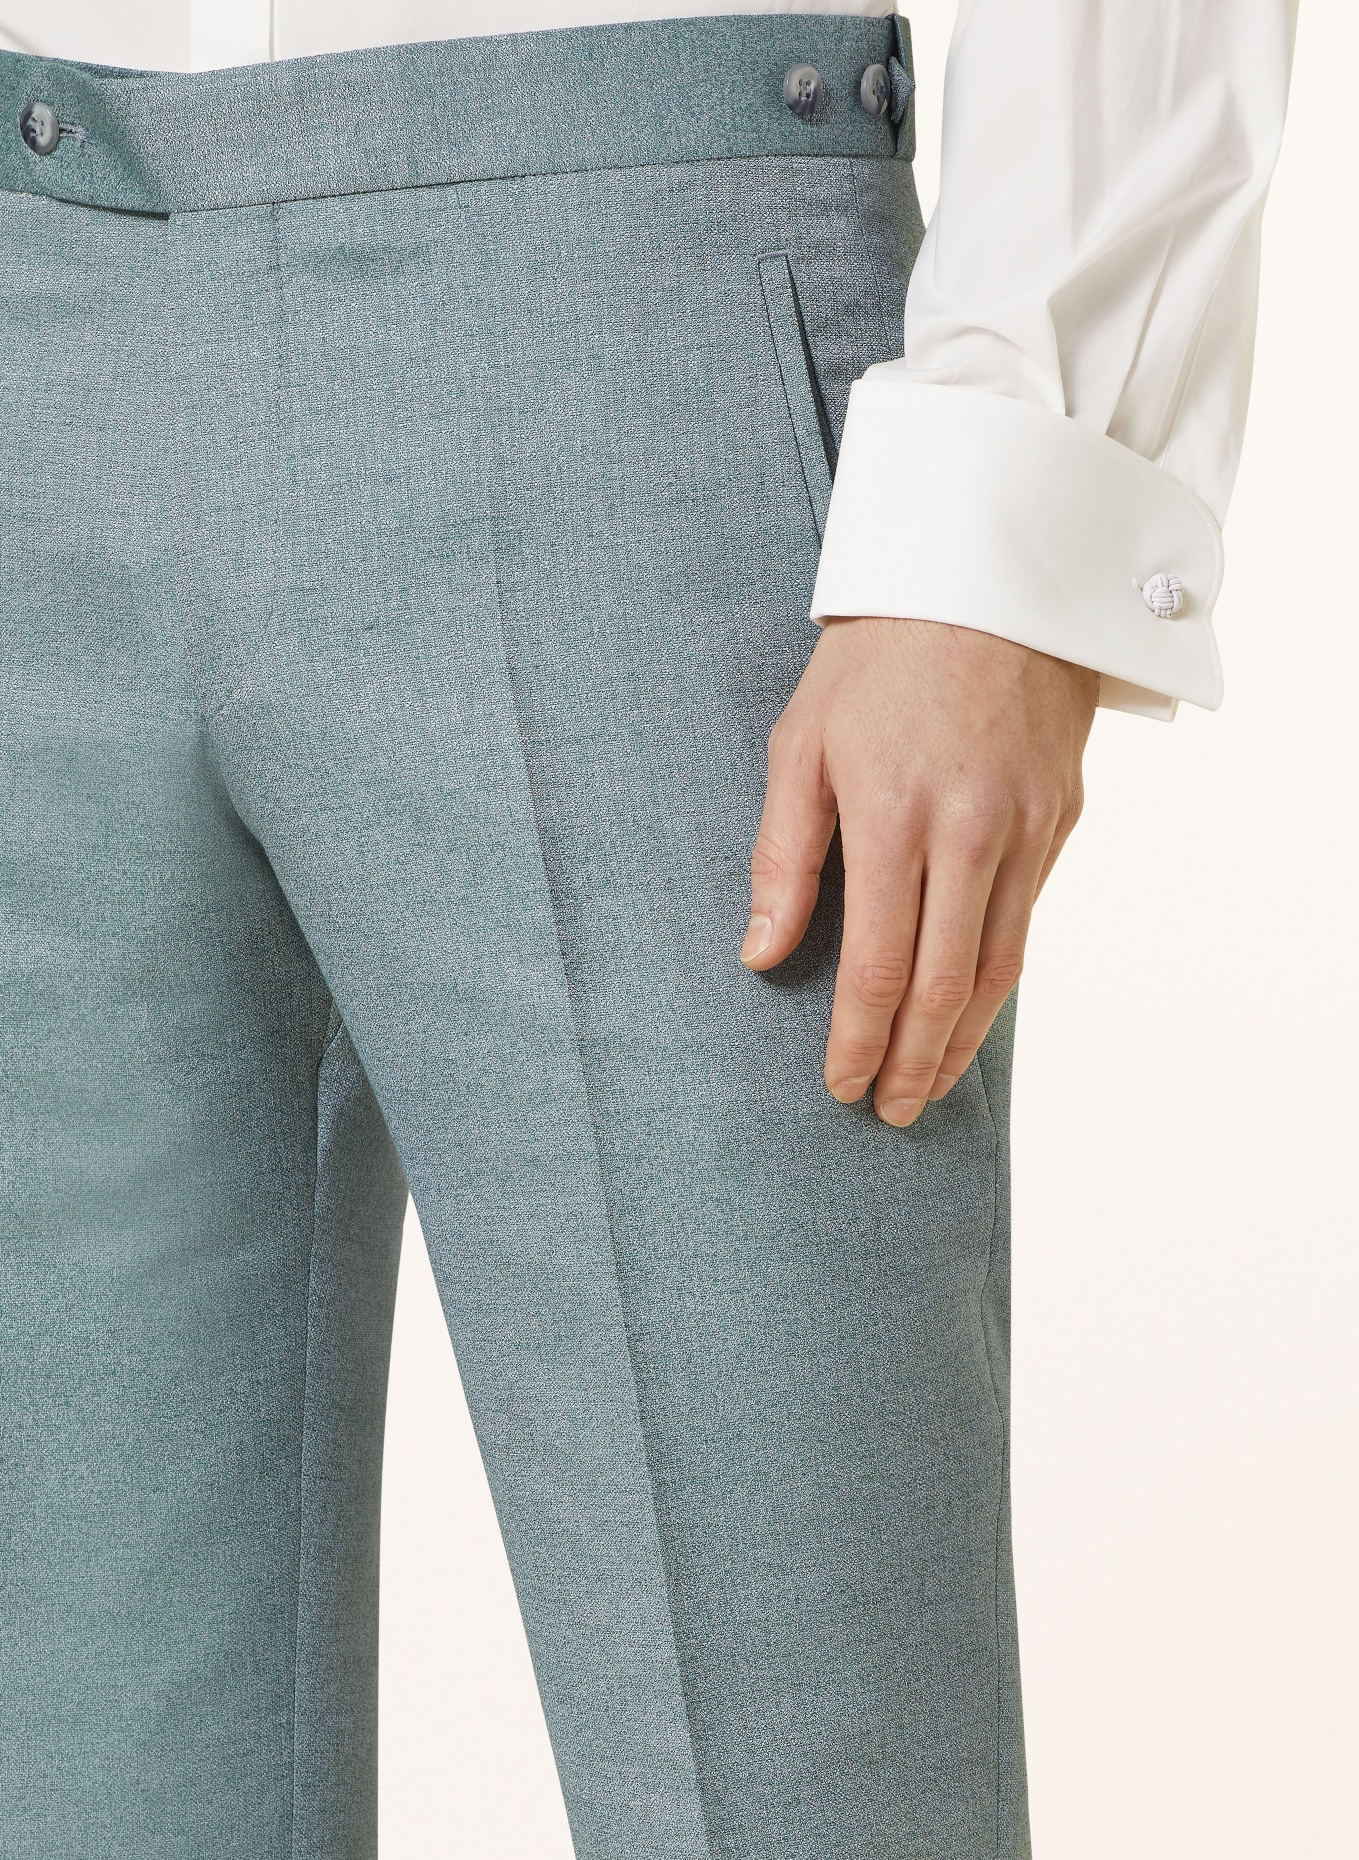 WILVORST Suit trousers extra slim fit, Color: 045 grün (Image 6)